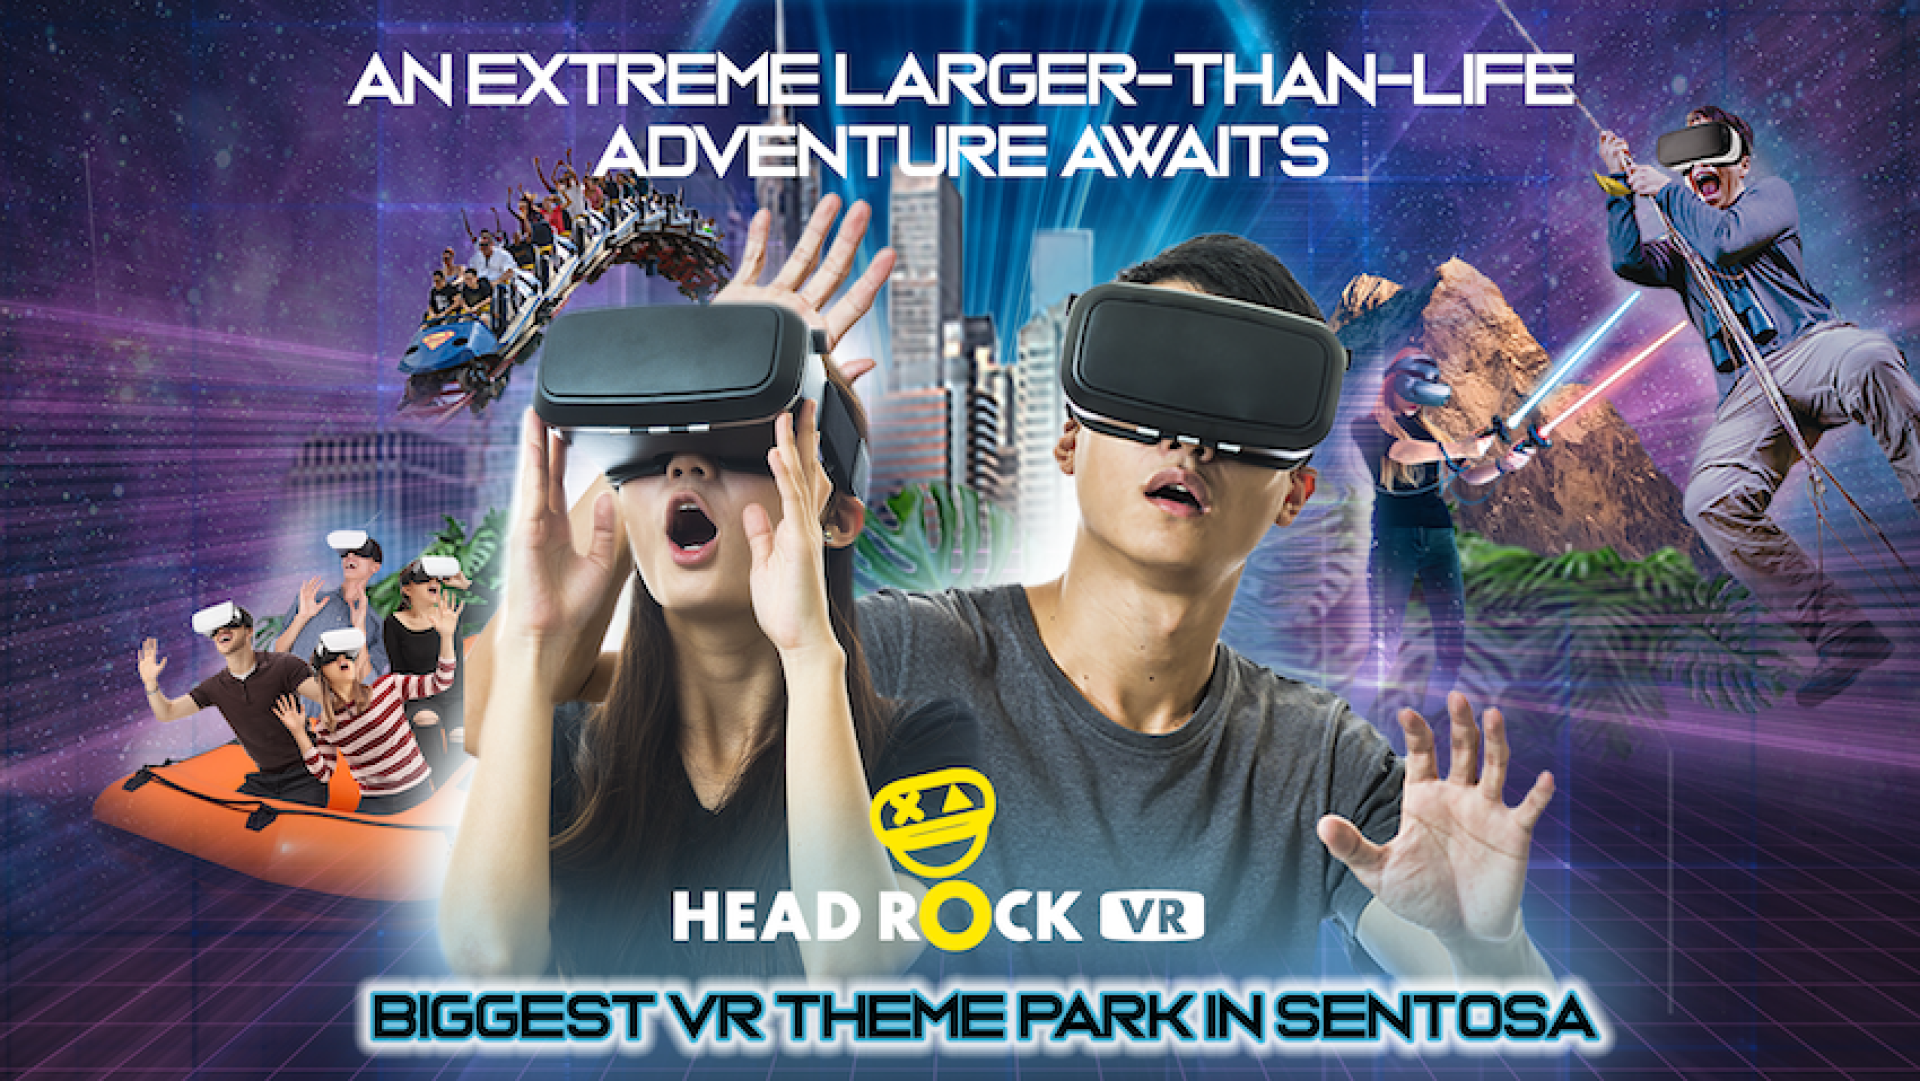  【聖淘沙新玩法】新加坡 HeadRock VR 虛擬實境主題體驗館 